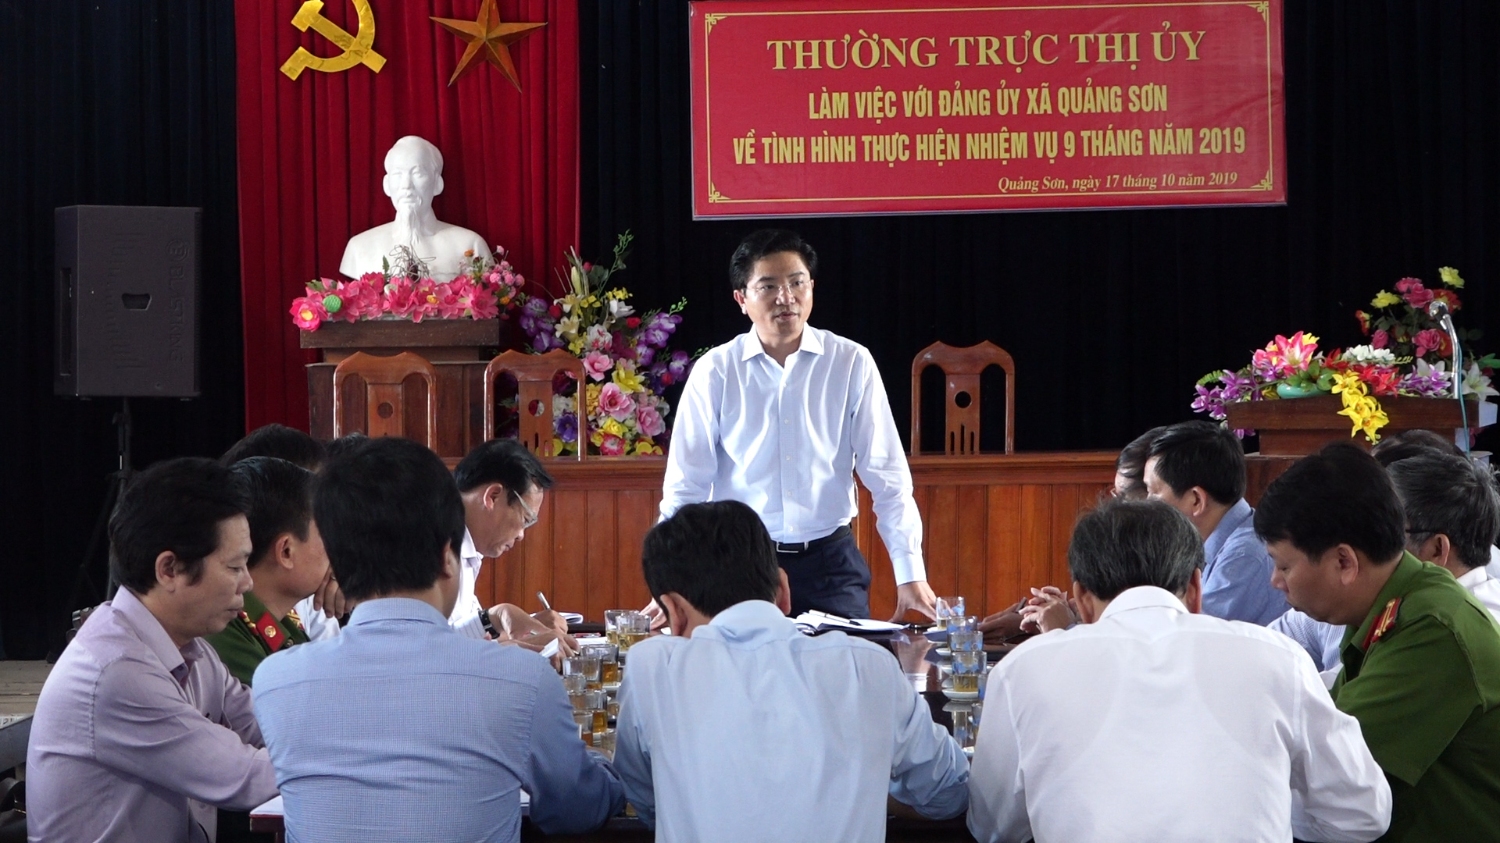 Thường trực Thị ủy Ba Đồn làm việc với Đảng ủy xã Quảng Sơn.         